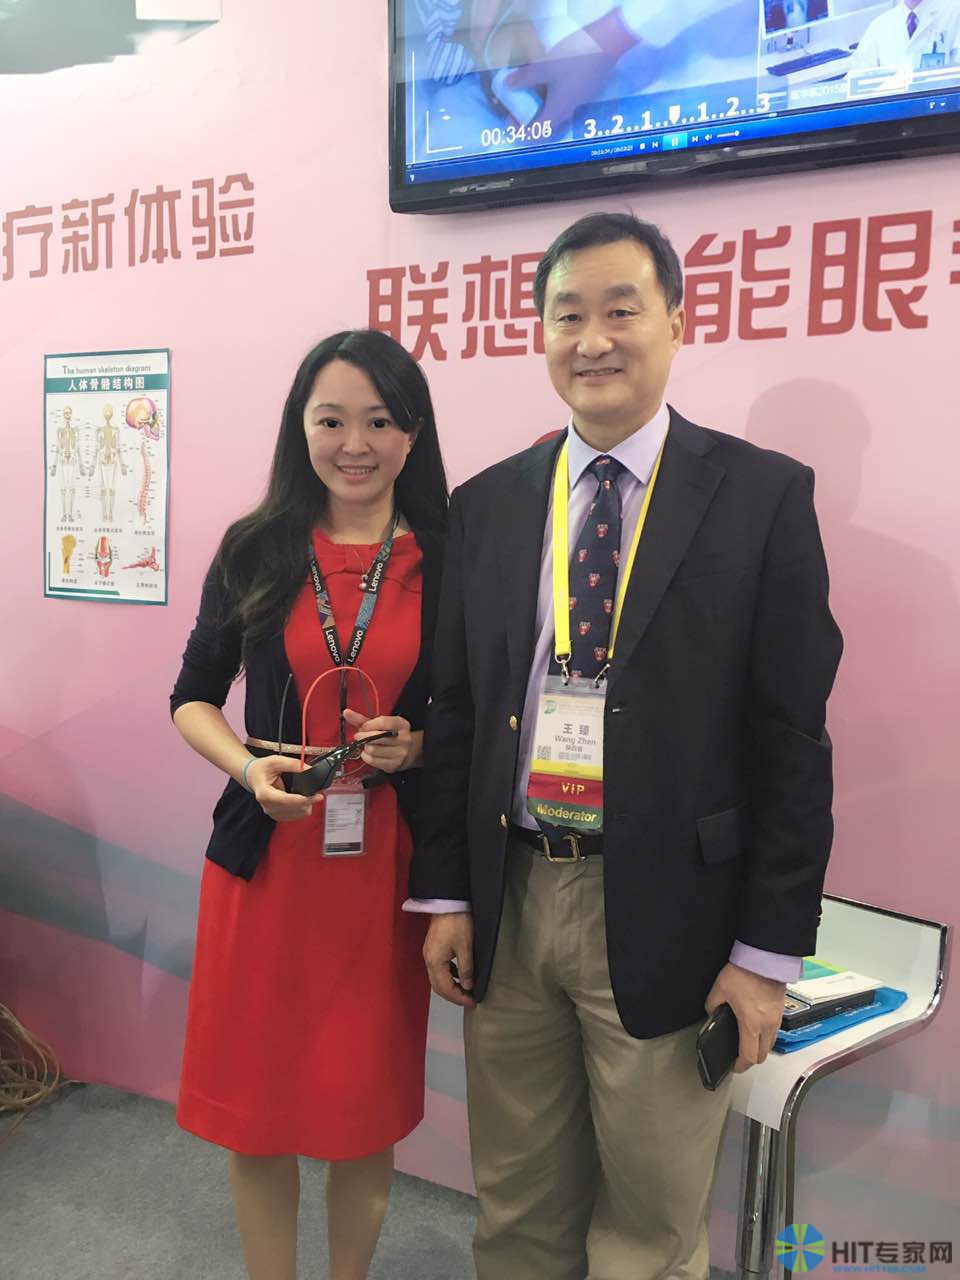 陕西西京医院骨科主任王臻十分鼓励联想通过新技术推进医疗领域的发展